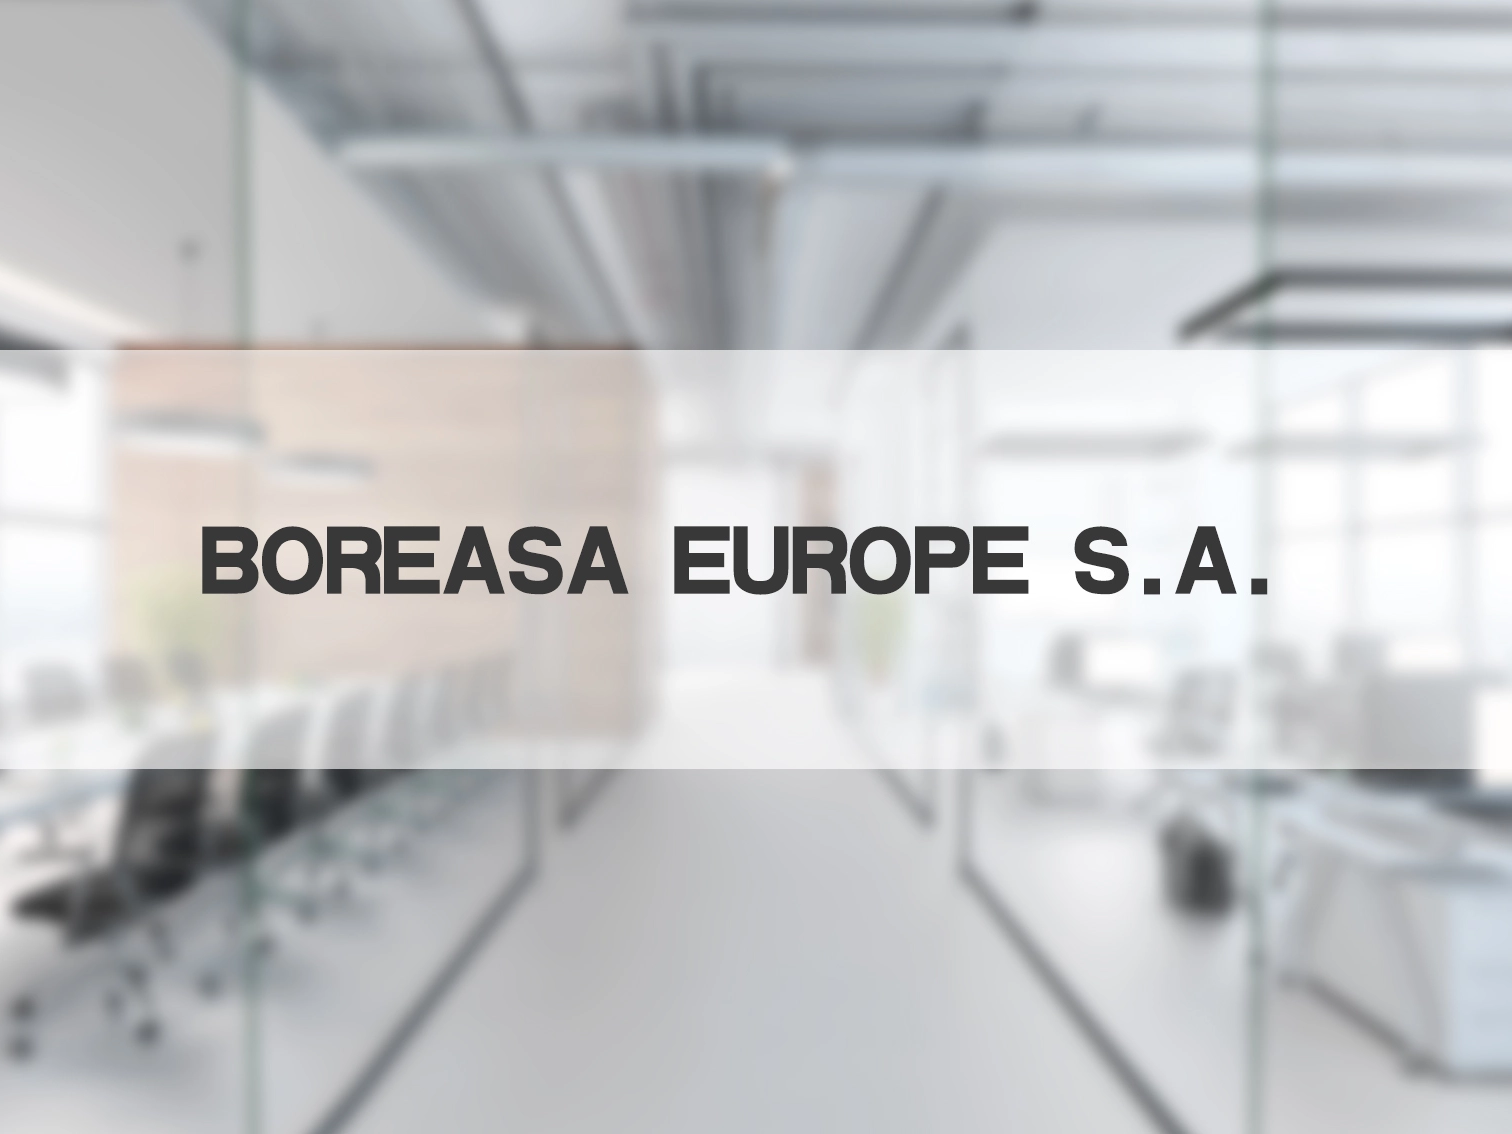 Boreasa opened a subsidiary in Europe called "Boreasa Europe S.A."